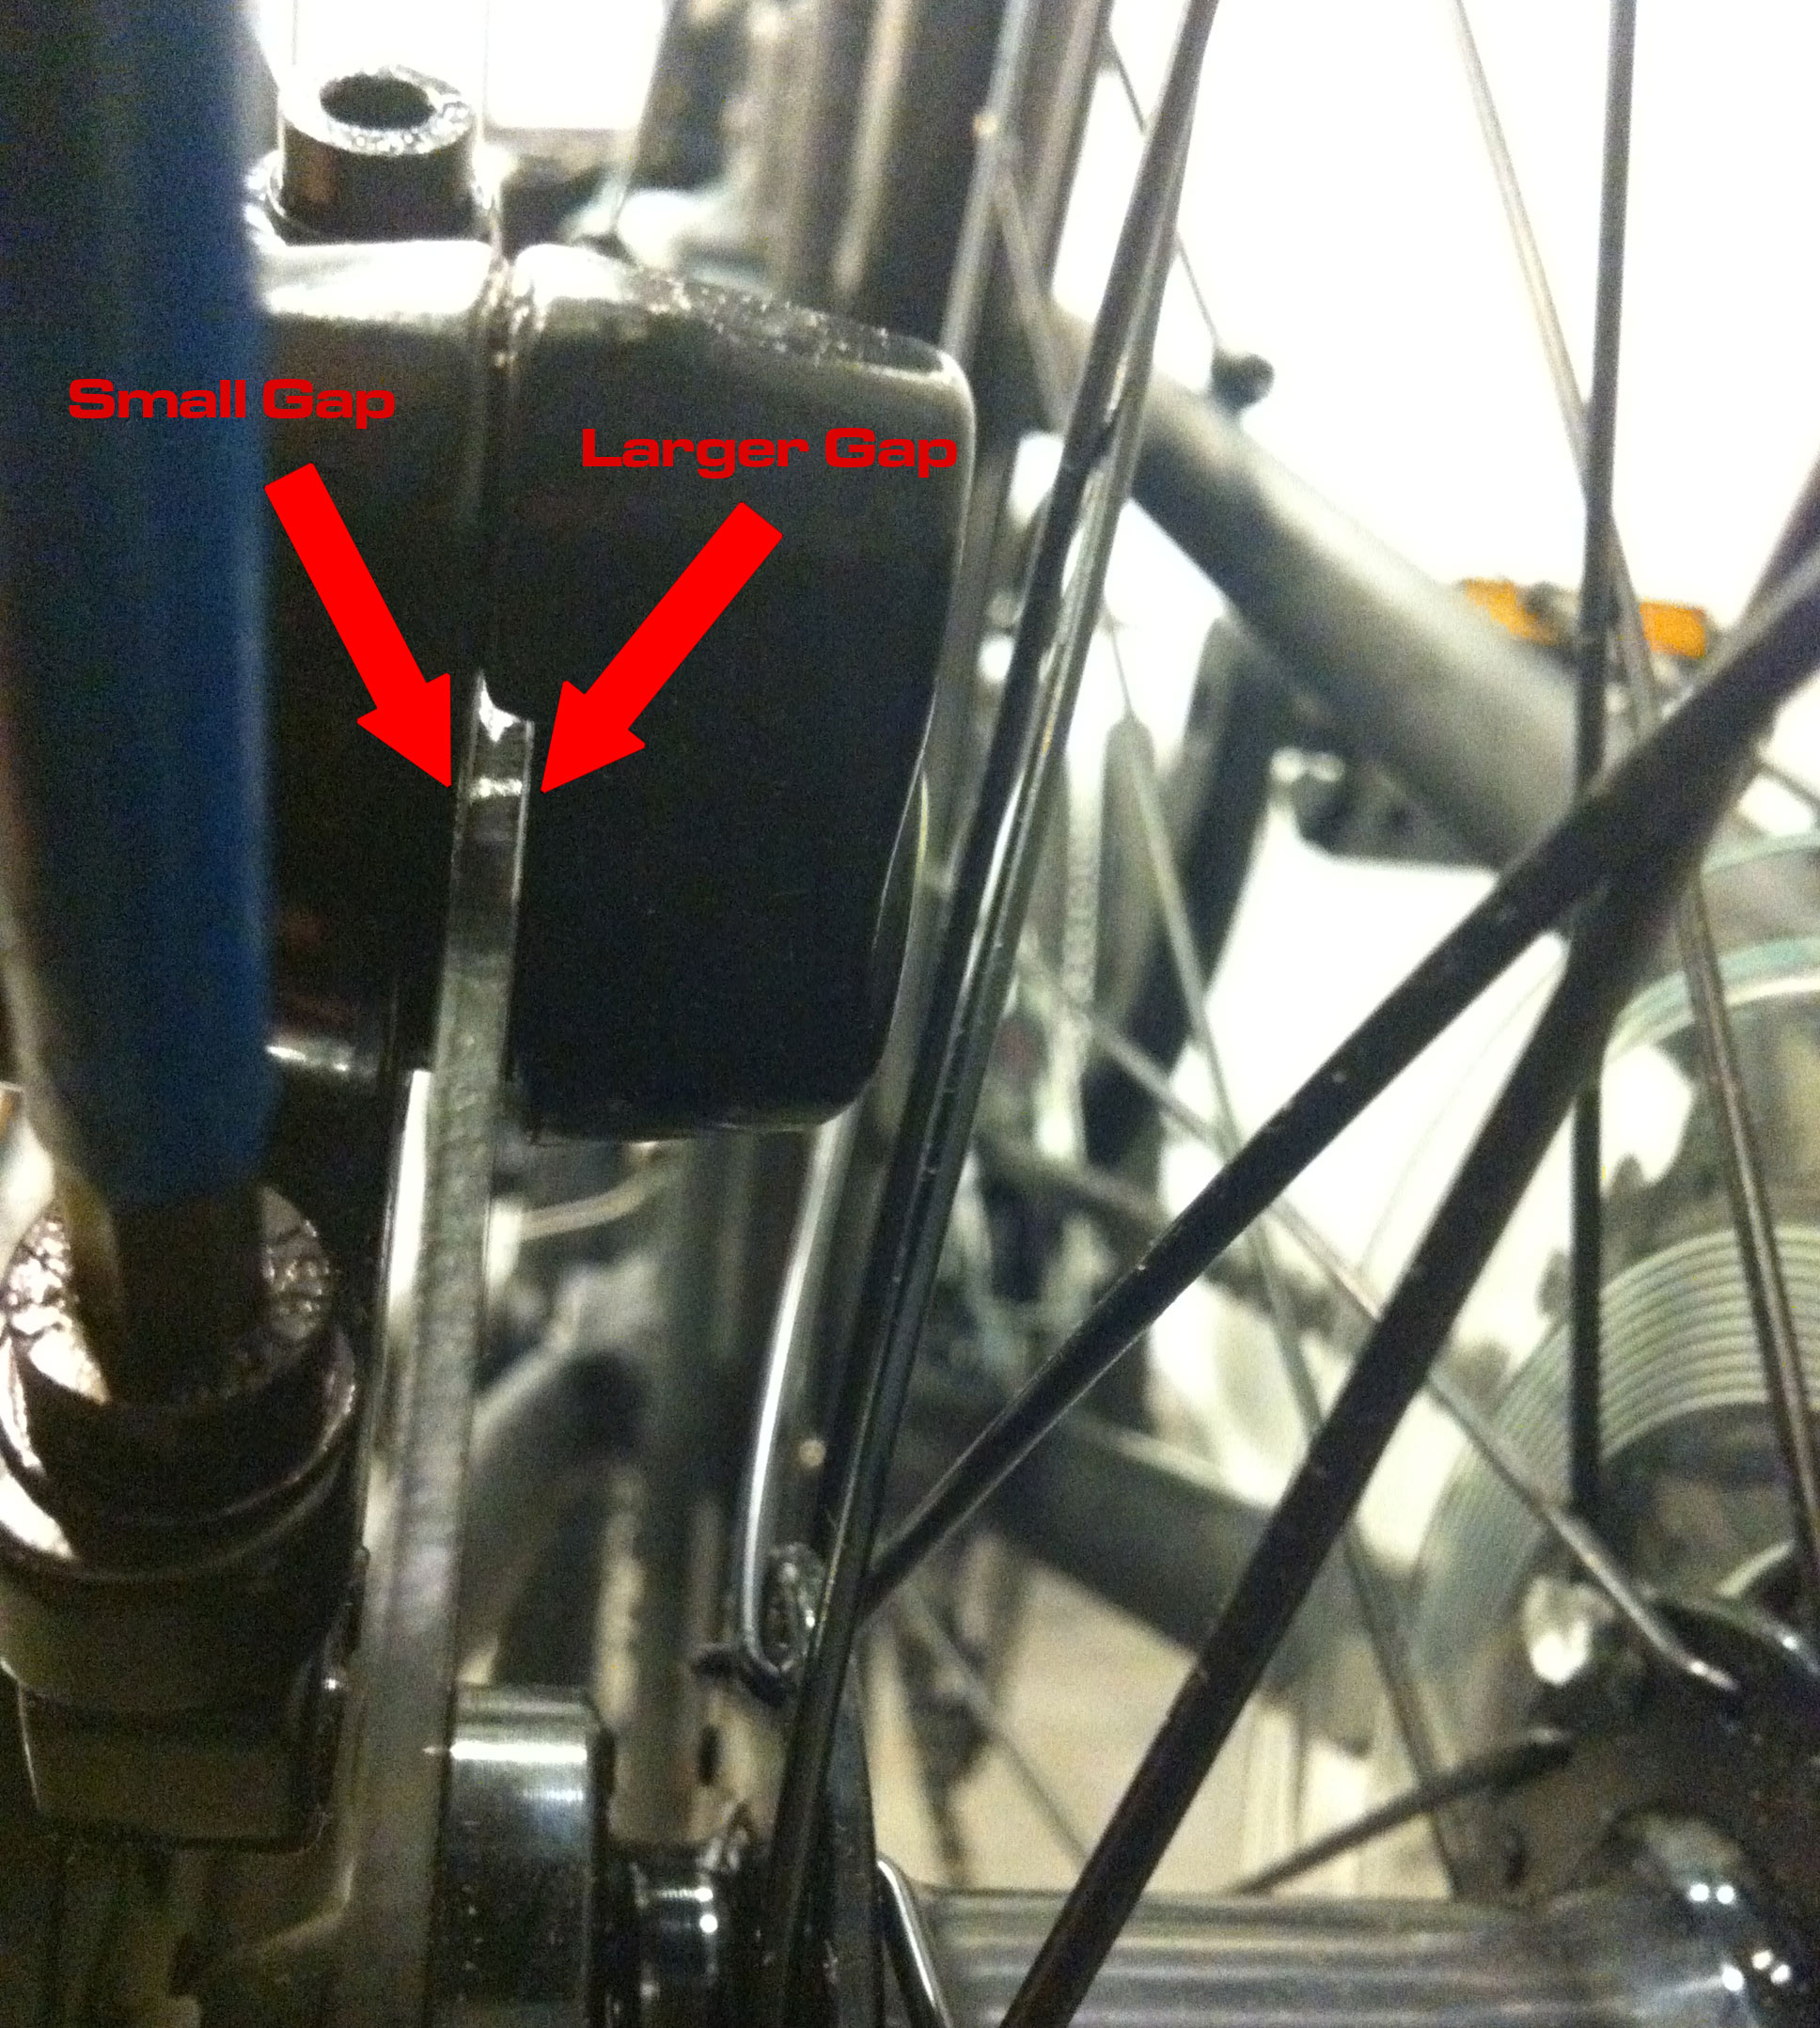 disc brakes sticking on mountain bike